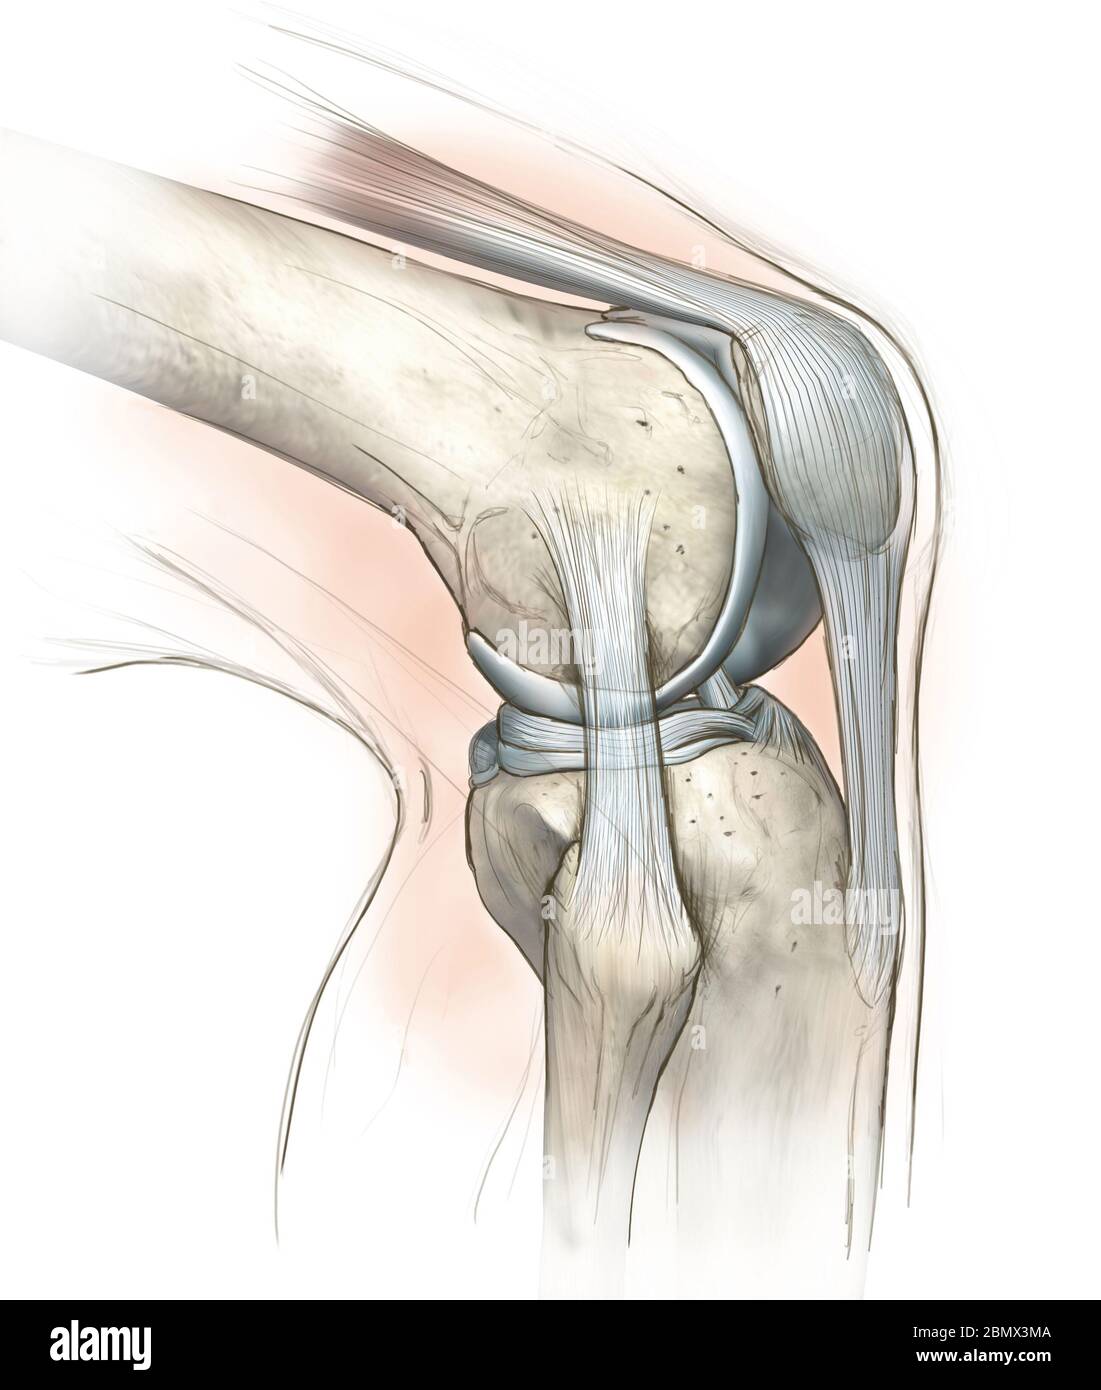 Illustrazione del disegno manuale che mostra l'articolazione del ginocchio umano con femore, cartilagine articolare, menisco, legamento collaterale mediale, cartilagine articolare, rotula Foto Stock